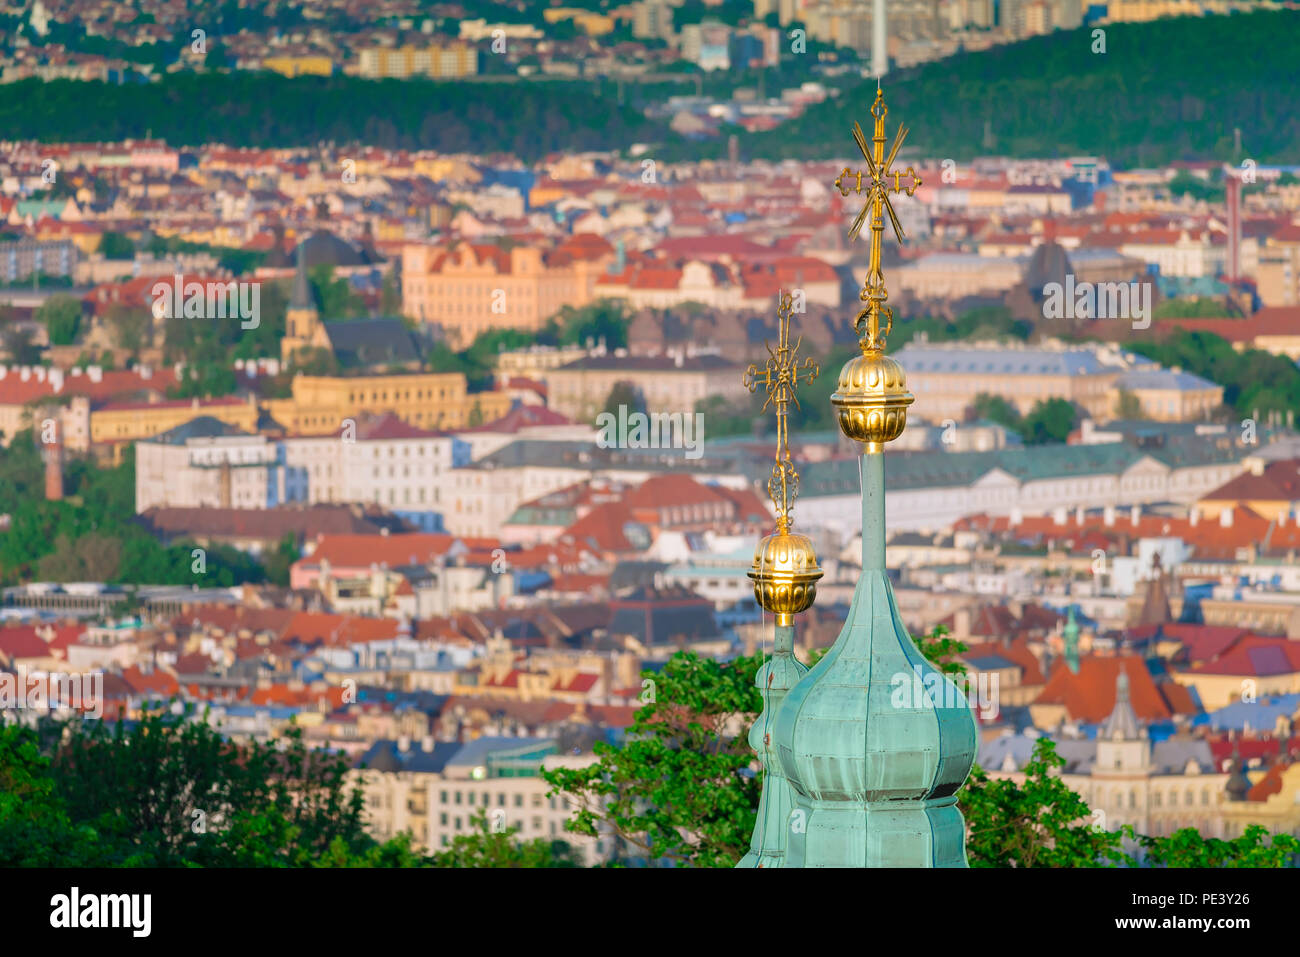 Prague vue sur la ville, vue aérienne d'un oignon dôme sur le dessus de l'église Saint-Laurent sur la colline de Petrin, dans le contexte de la Nove Mesto de Prague. Banque D'Images